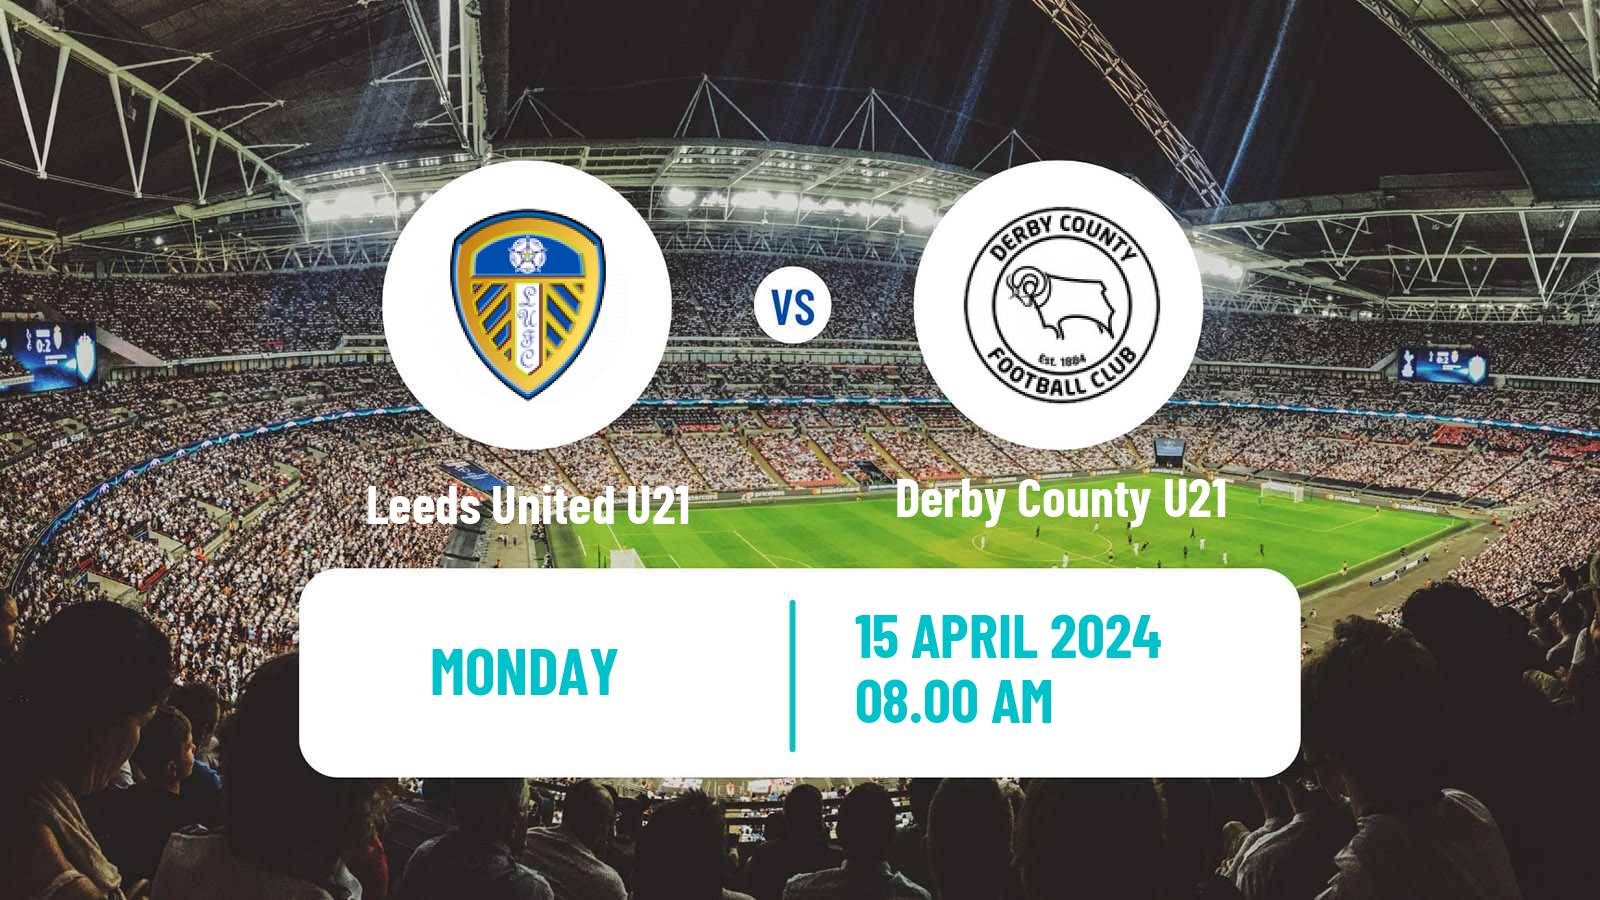 Soccer English Premier League 2 Leeds United U21 - Derby County U21